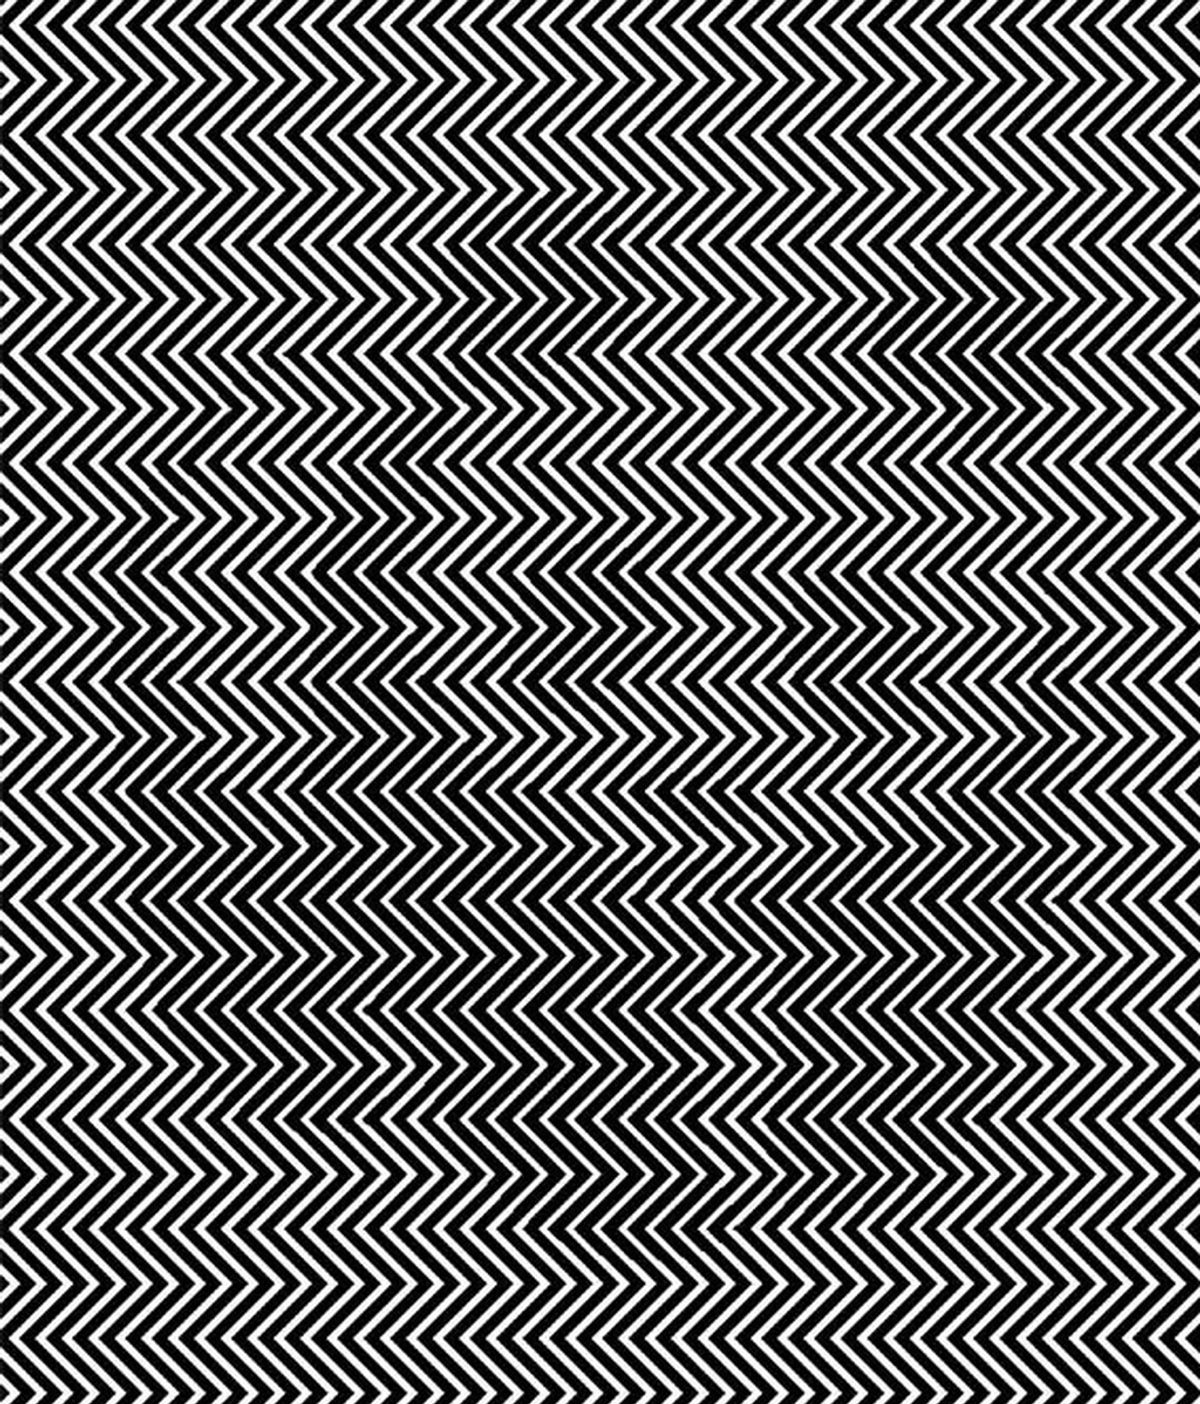 Ilusión óptica con panda de fondo